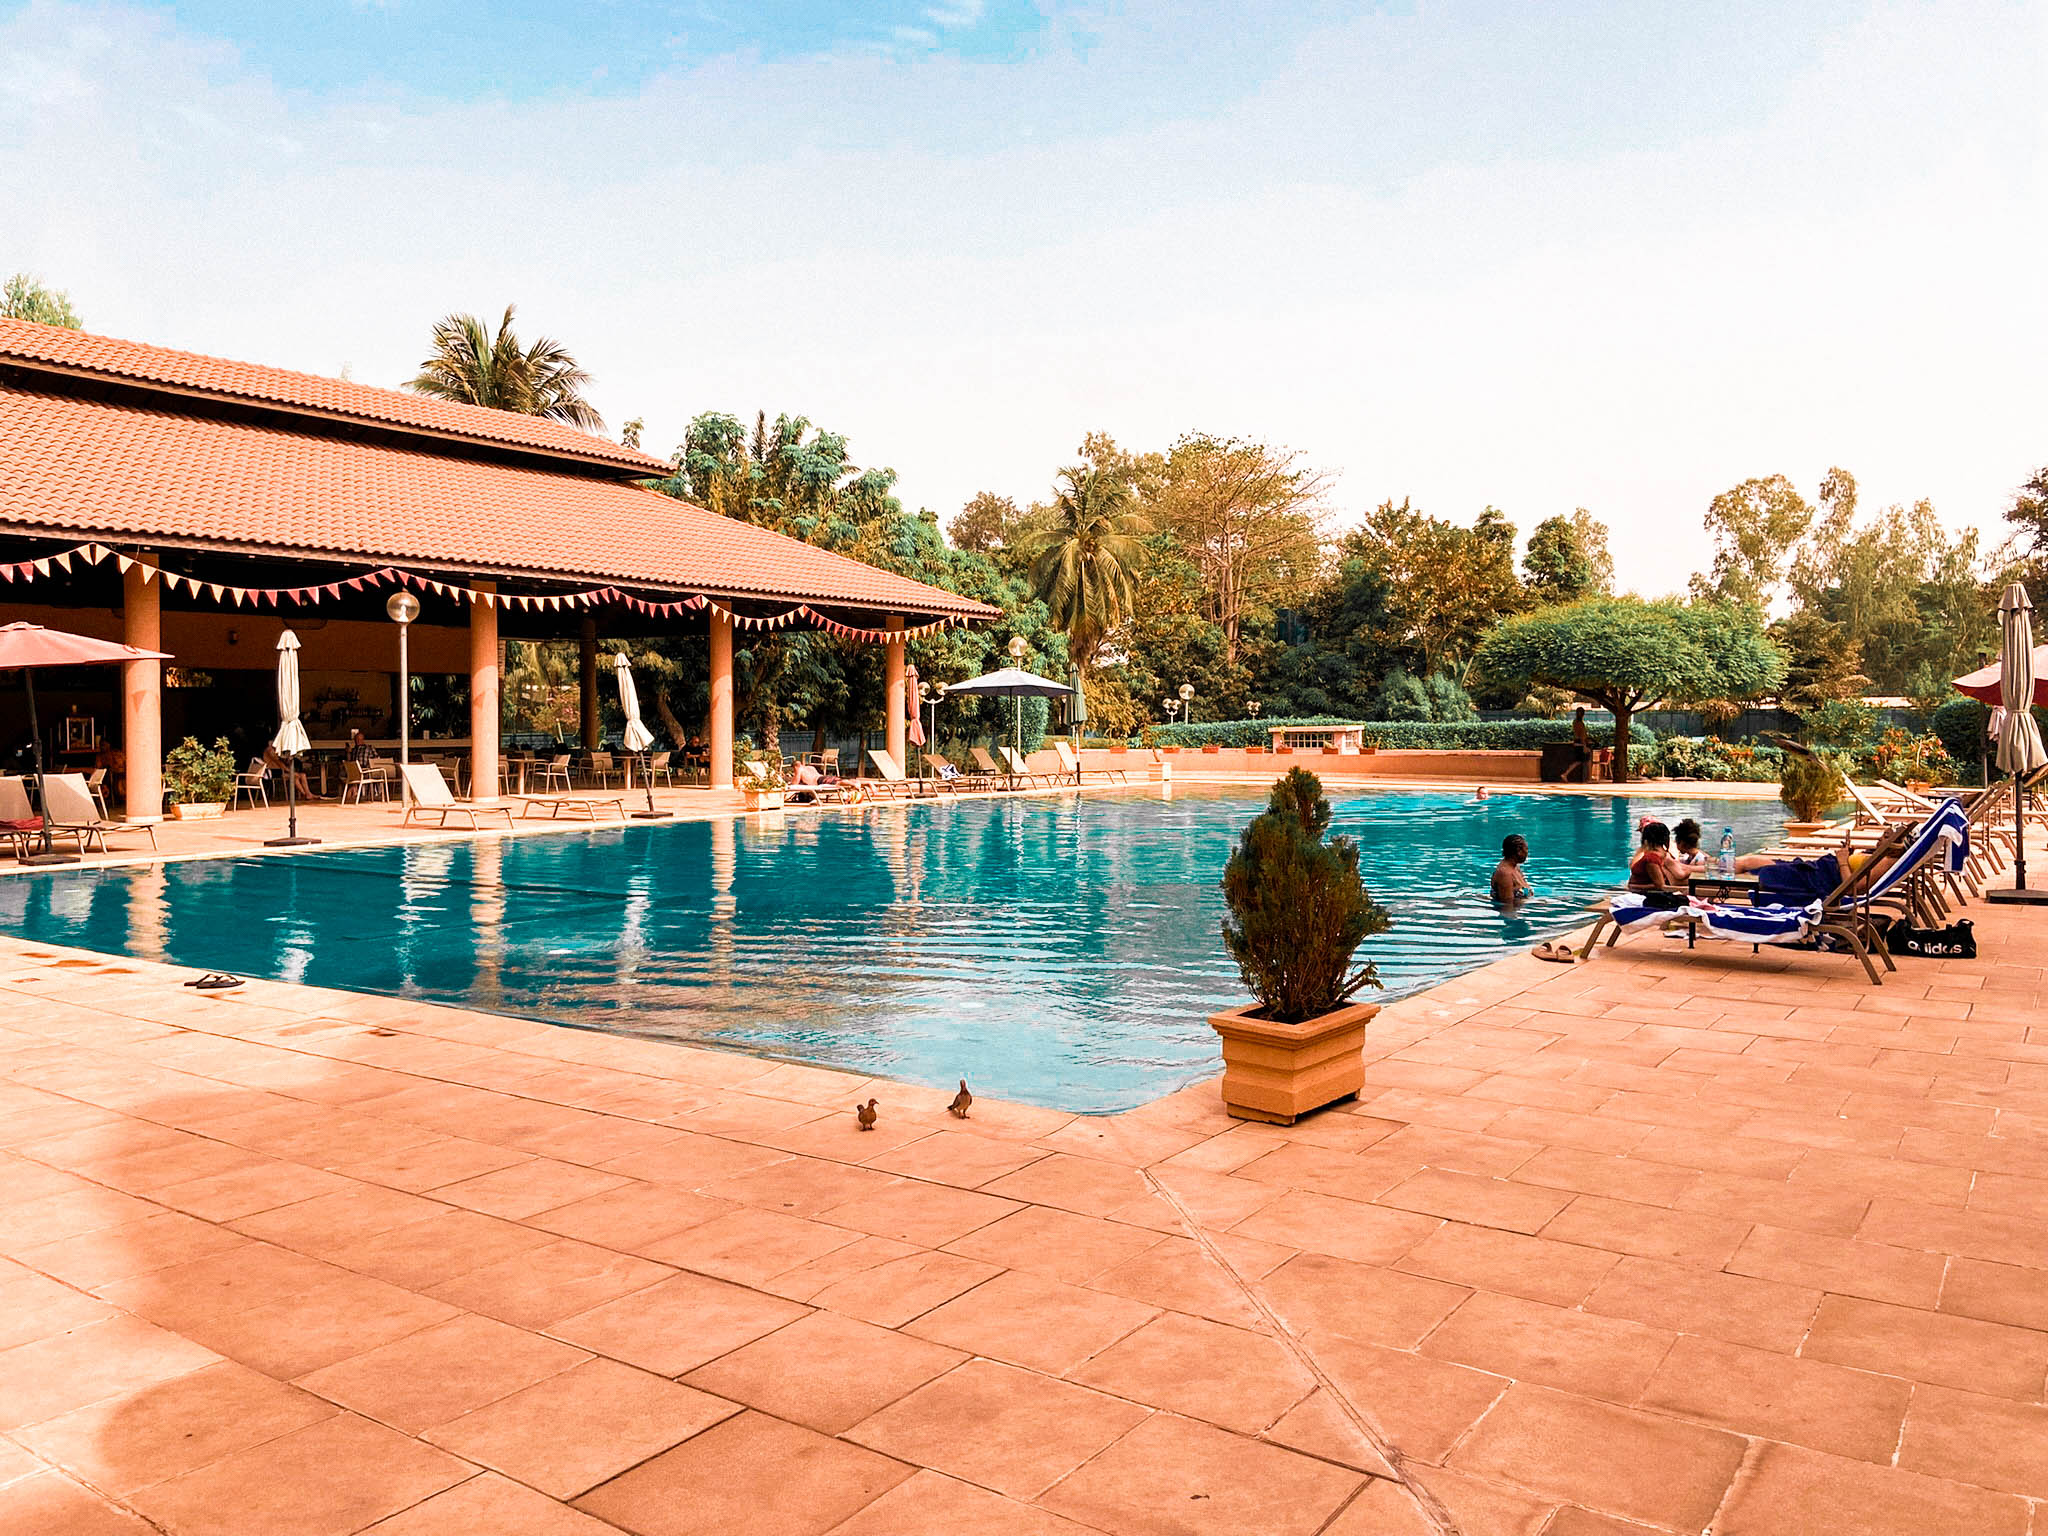 Hôtel Azalaï Bamako, piscine et restaurant 